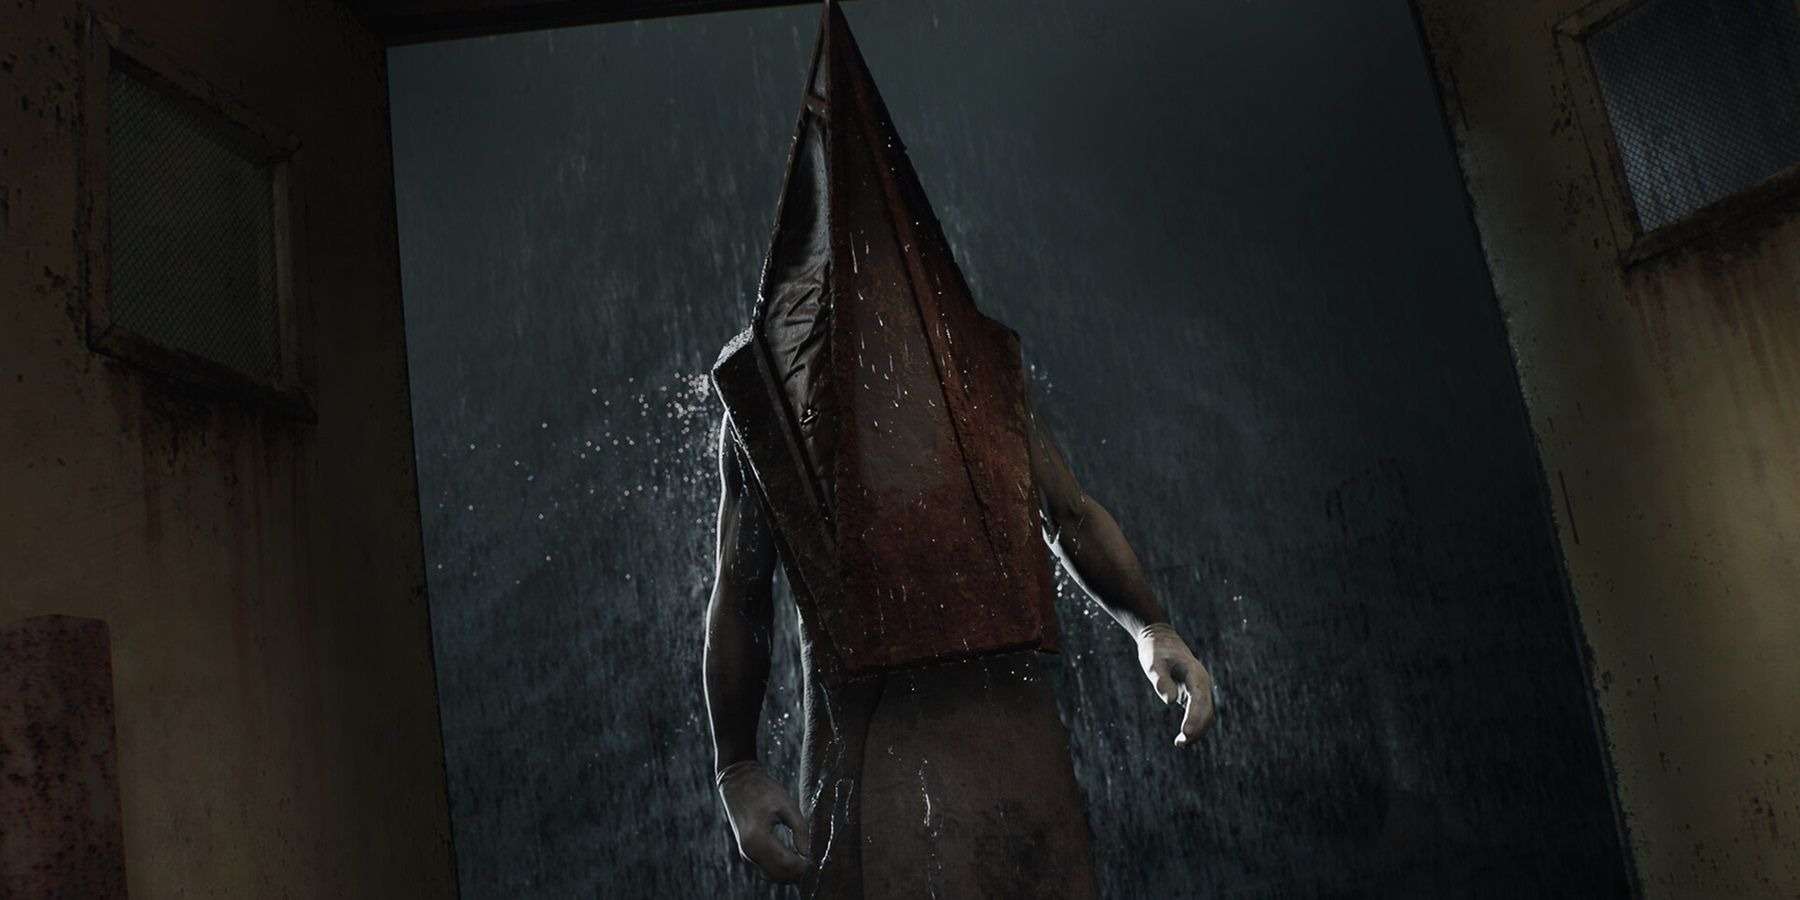 Silent Hill 2 Remake chuẩn bị công bố sau 2 thập kỷ chờ đợi từ game thủ?